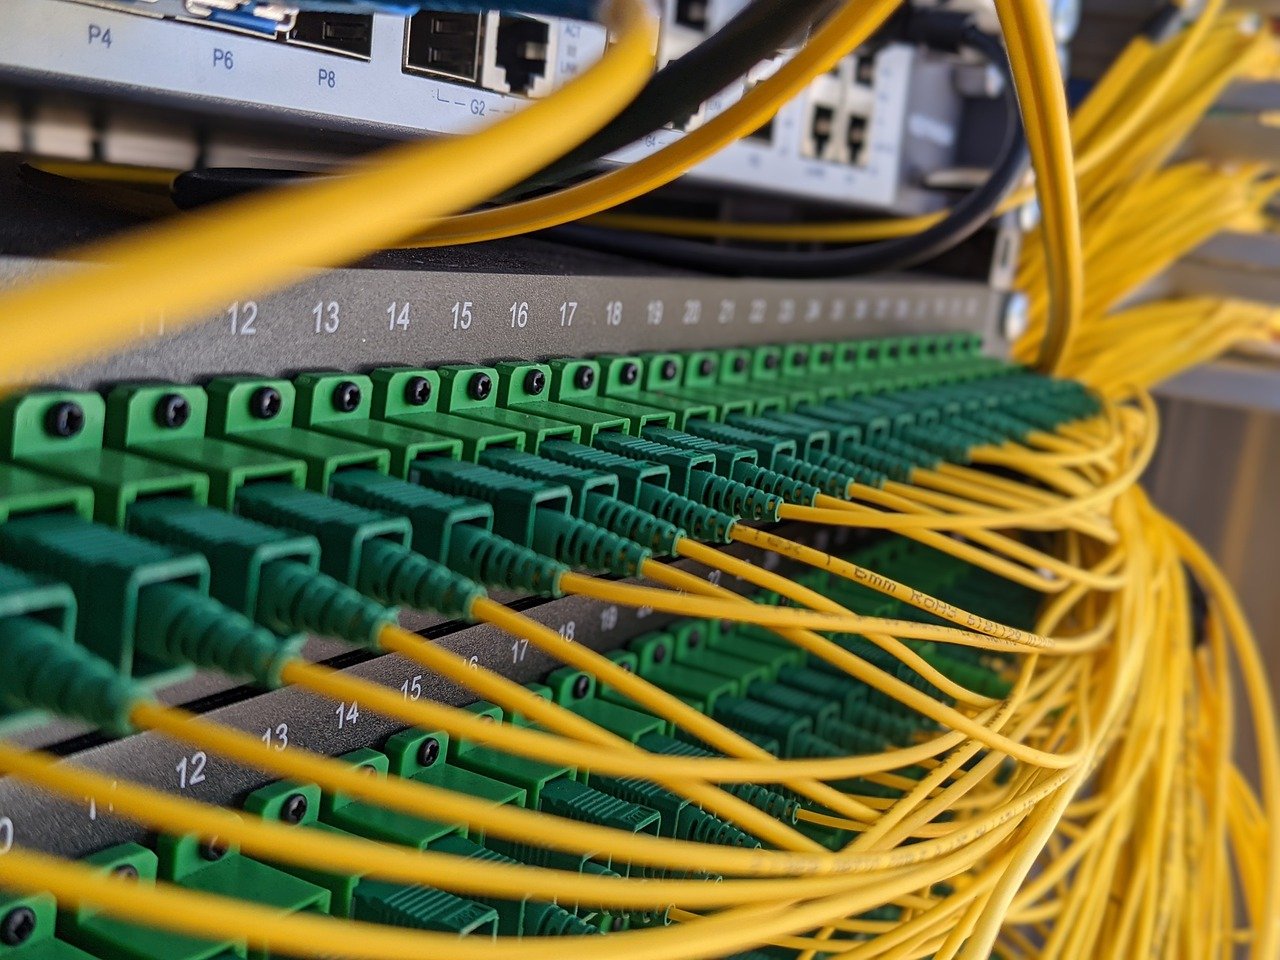 Comment faire un test internet d'éligibilité a la fibre optique sur votre débit réseau ?